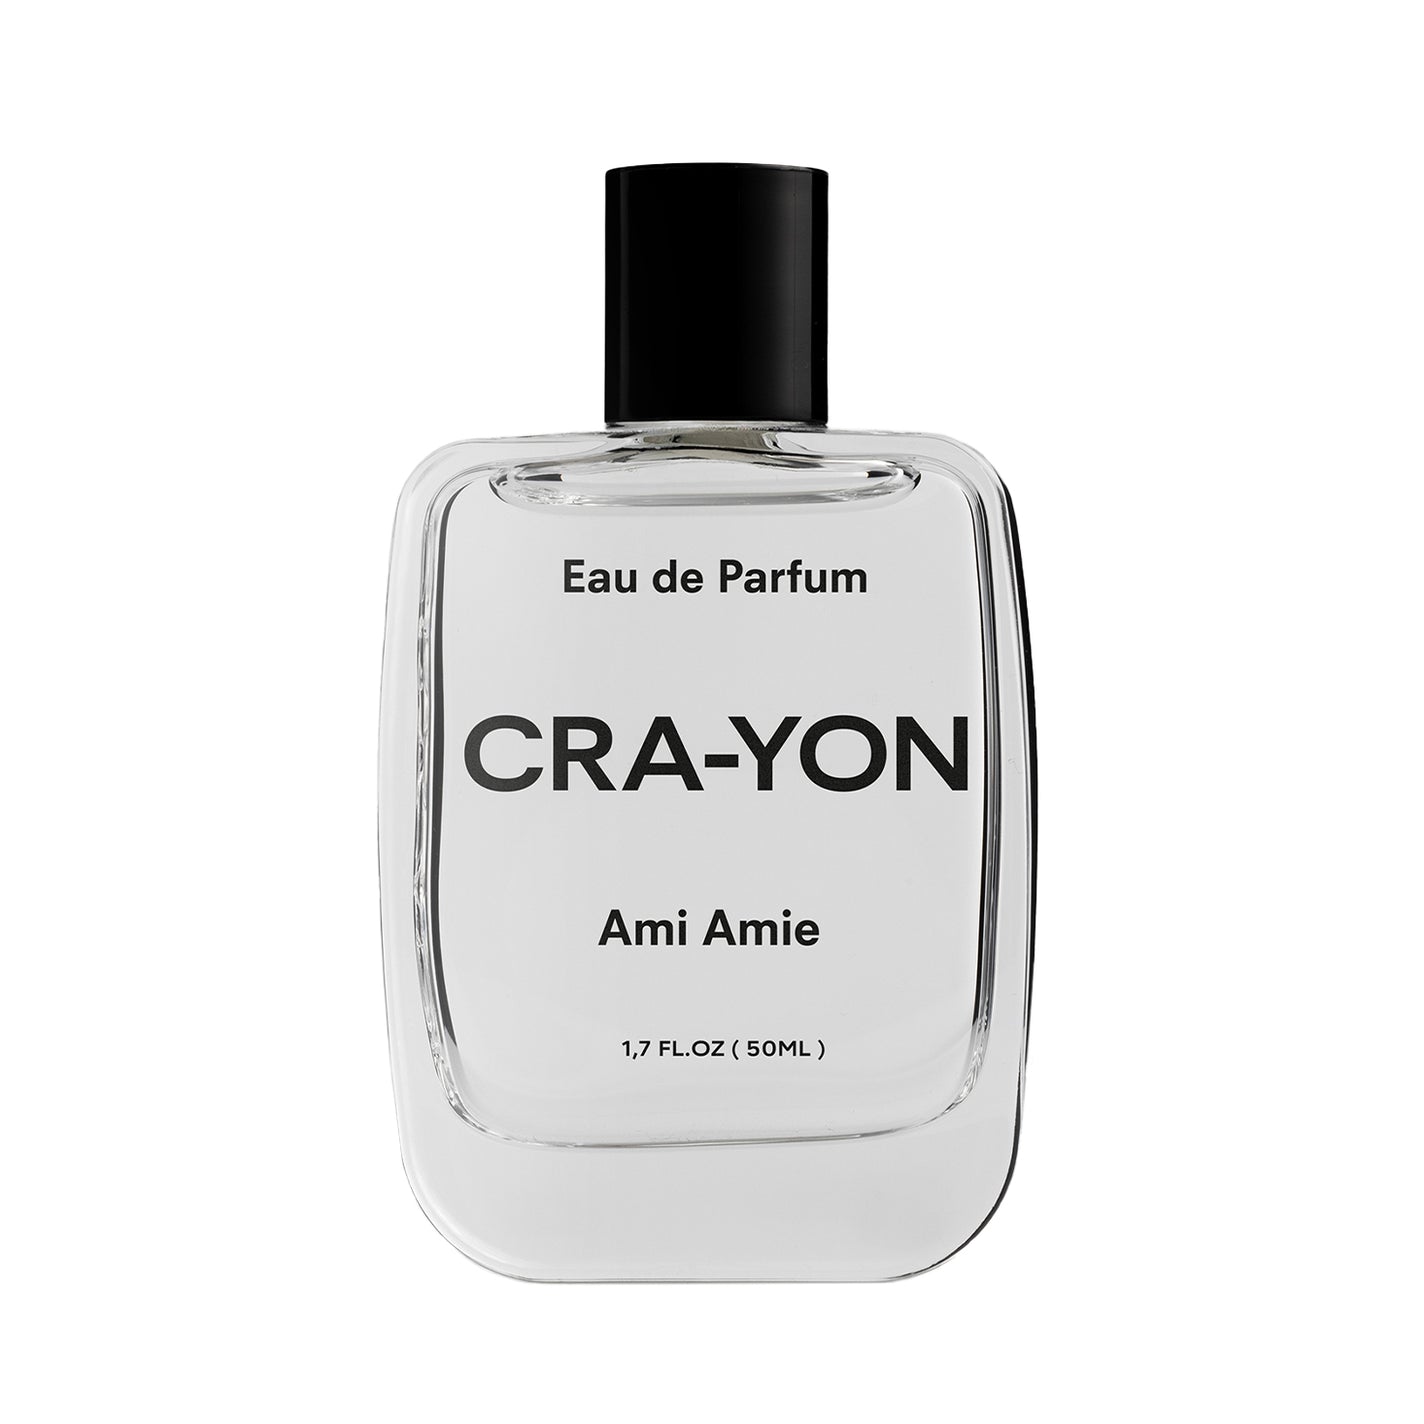 CRA-YON Ami Amie Eau de Parfum - 50ml